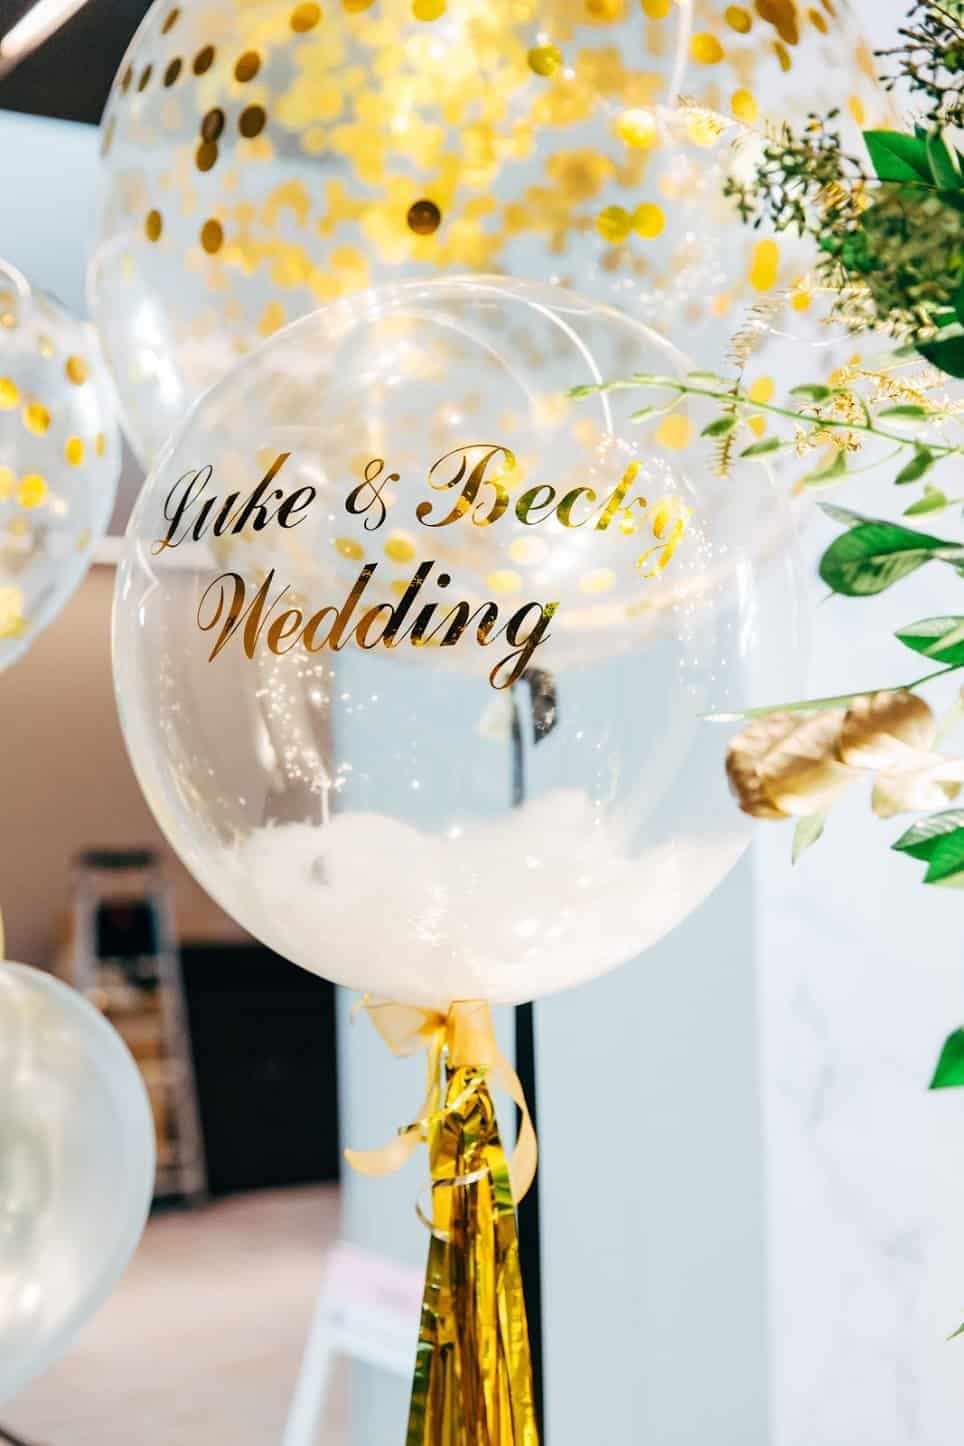 在 新北 的 板橋希爾頓飯店 場地舉行陽光正好的美式 婚禮 , 是每位新娘夢寐以求的西式婚禮樣式!